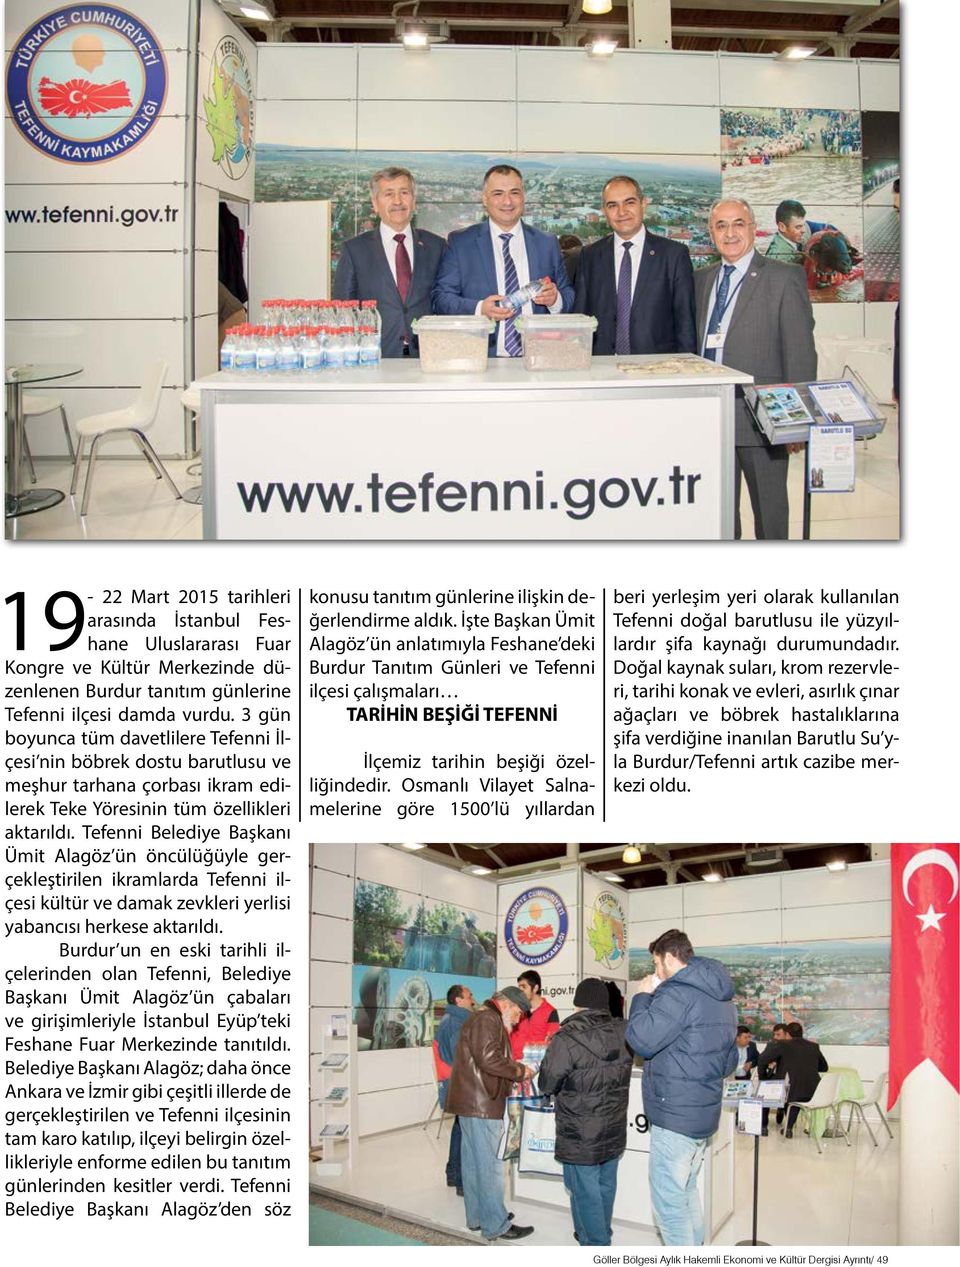 Tefenni Belediye Başkanı Ümit Alagöz ün öncülüğüyle gerçekleştirilen ikramlarda Tefenni ilçesi kültür ve damak zevkleri yerlisi yabancısı herkese aktarıldı.